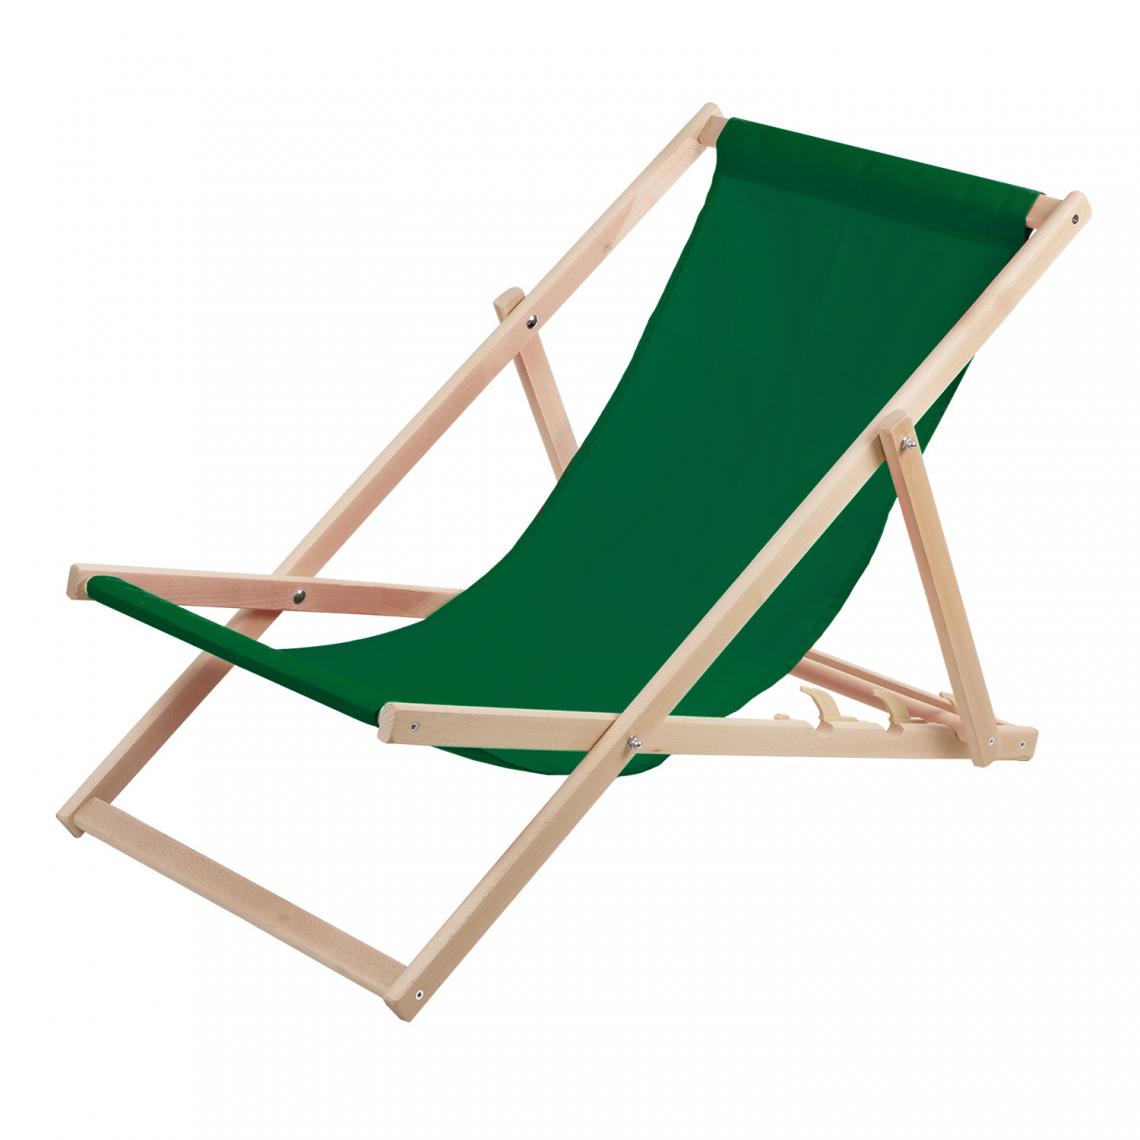 Sans Marque - Chaise longue Wood Ok confortable ,en bois , vert, idéale pour la plage, le balcon, la terrasse - Transats, chaises longues